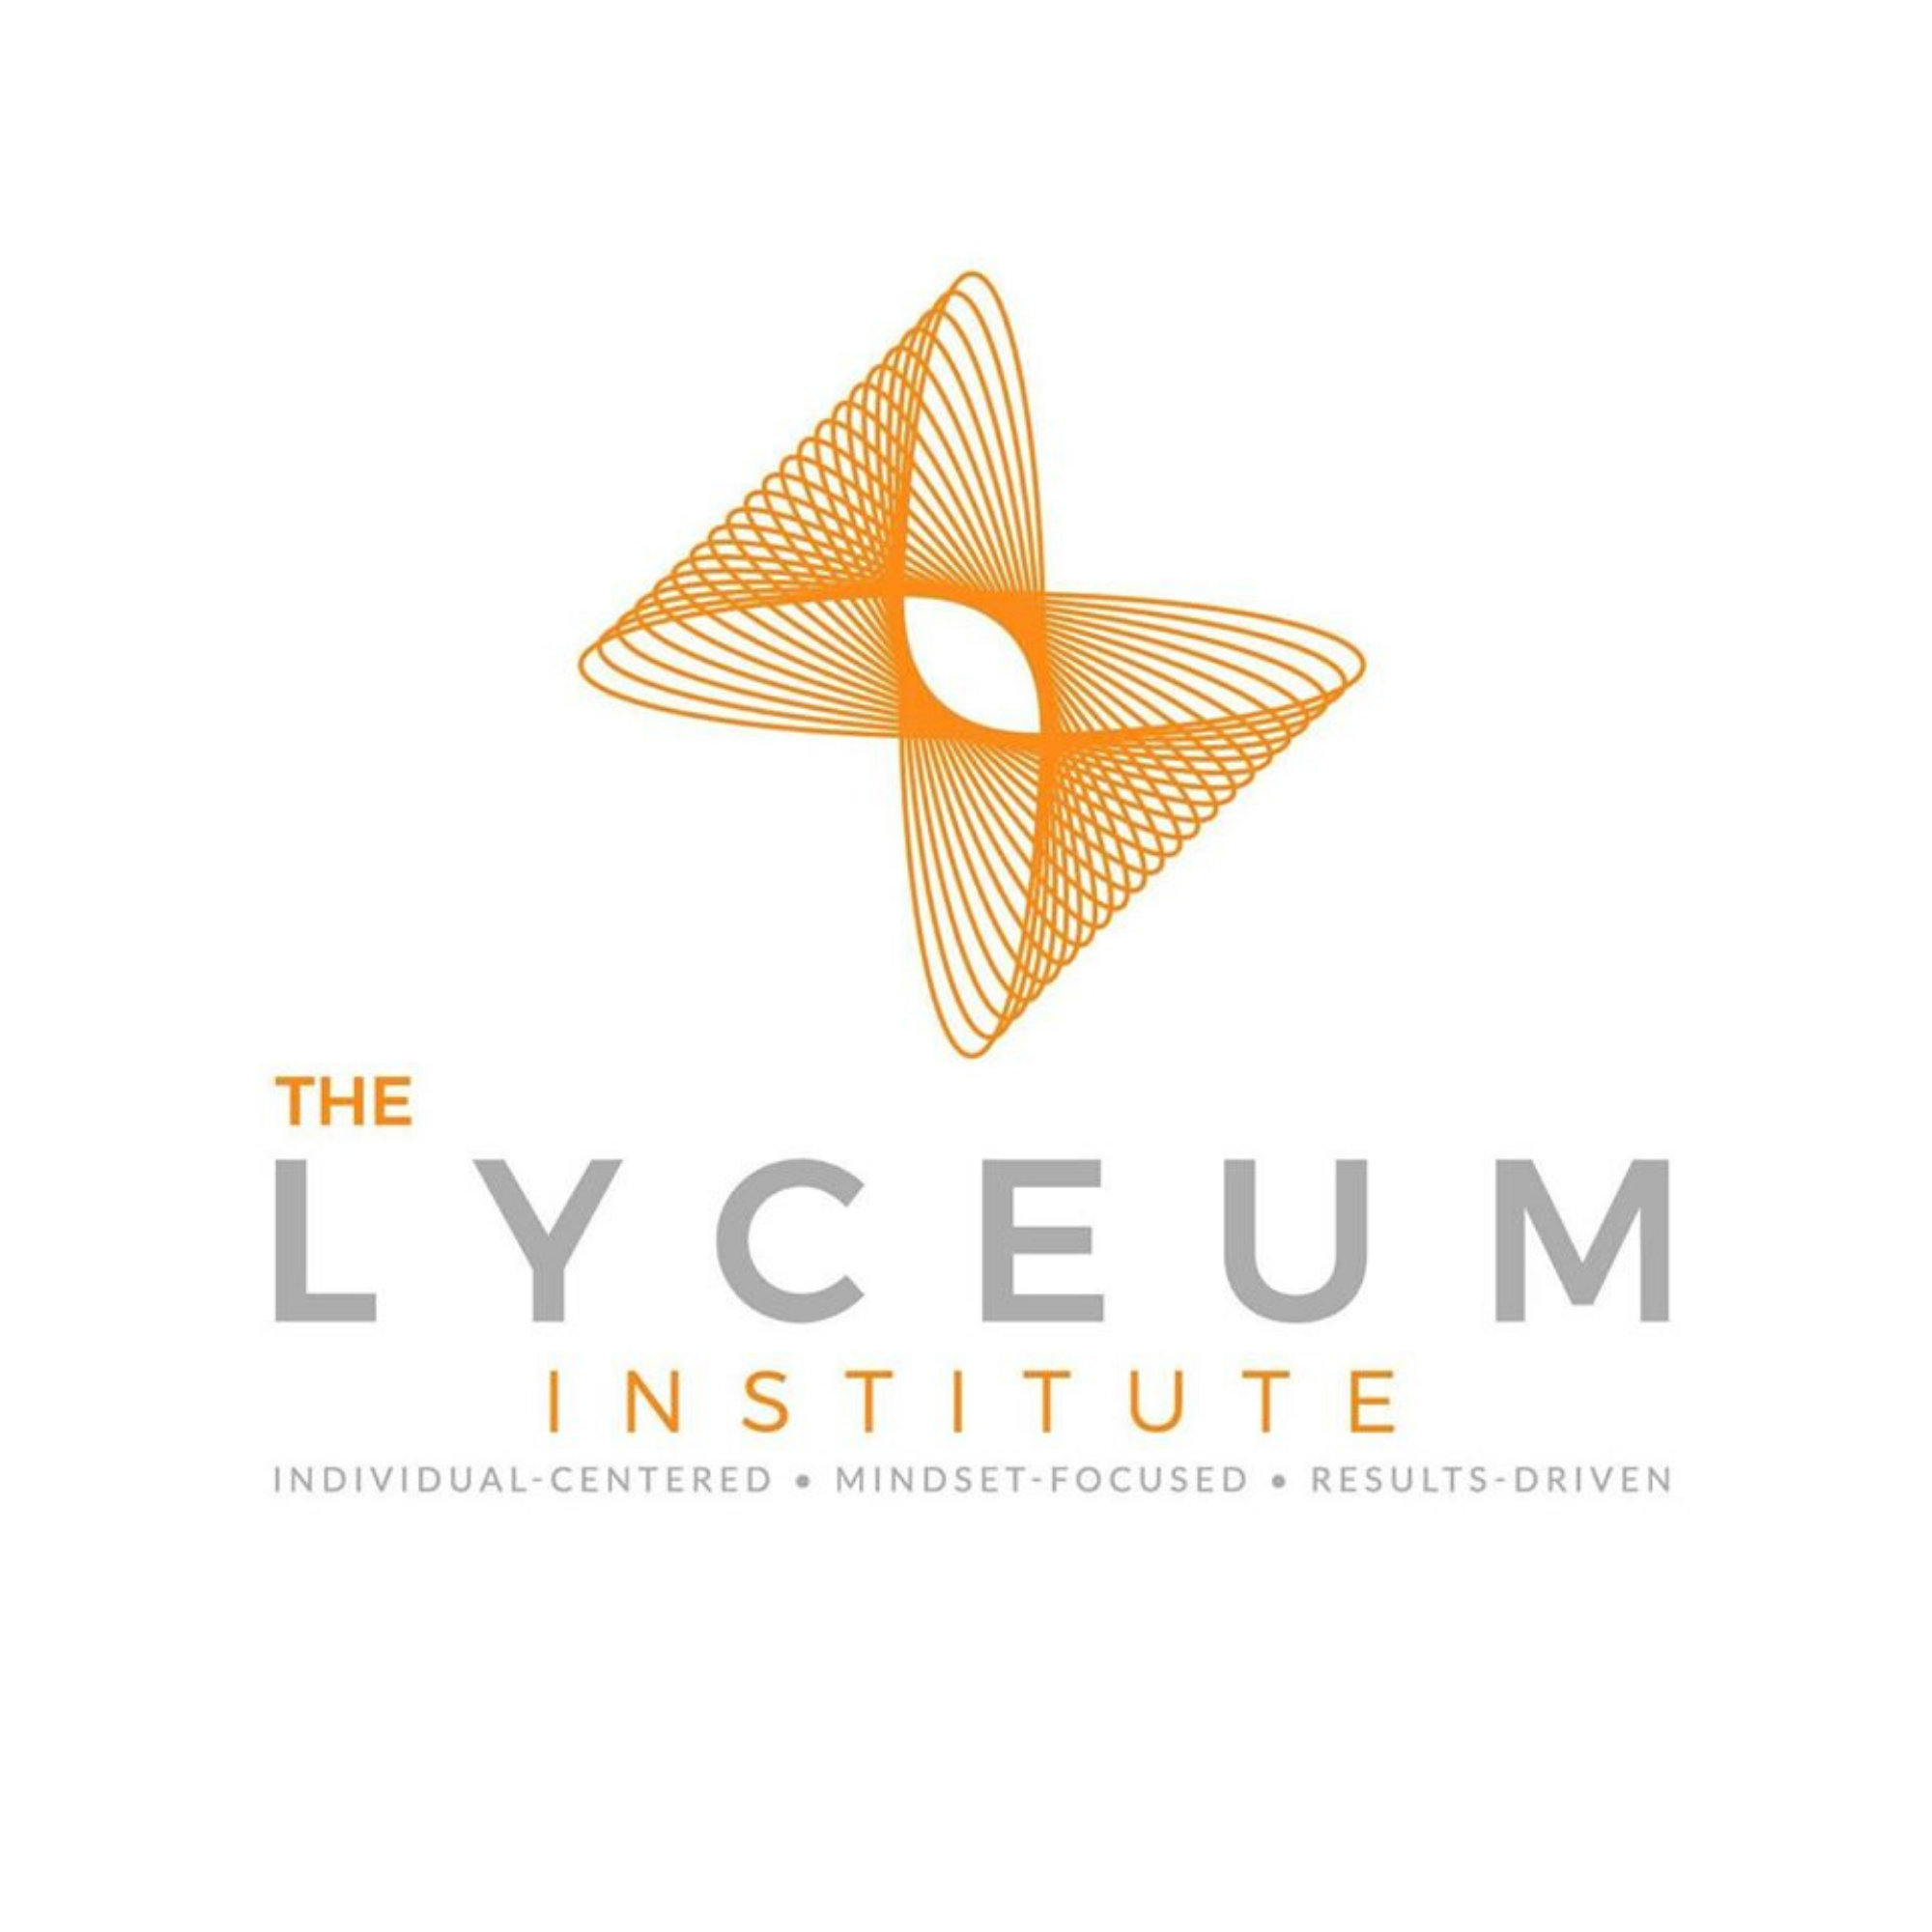 The Lyceum Institute